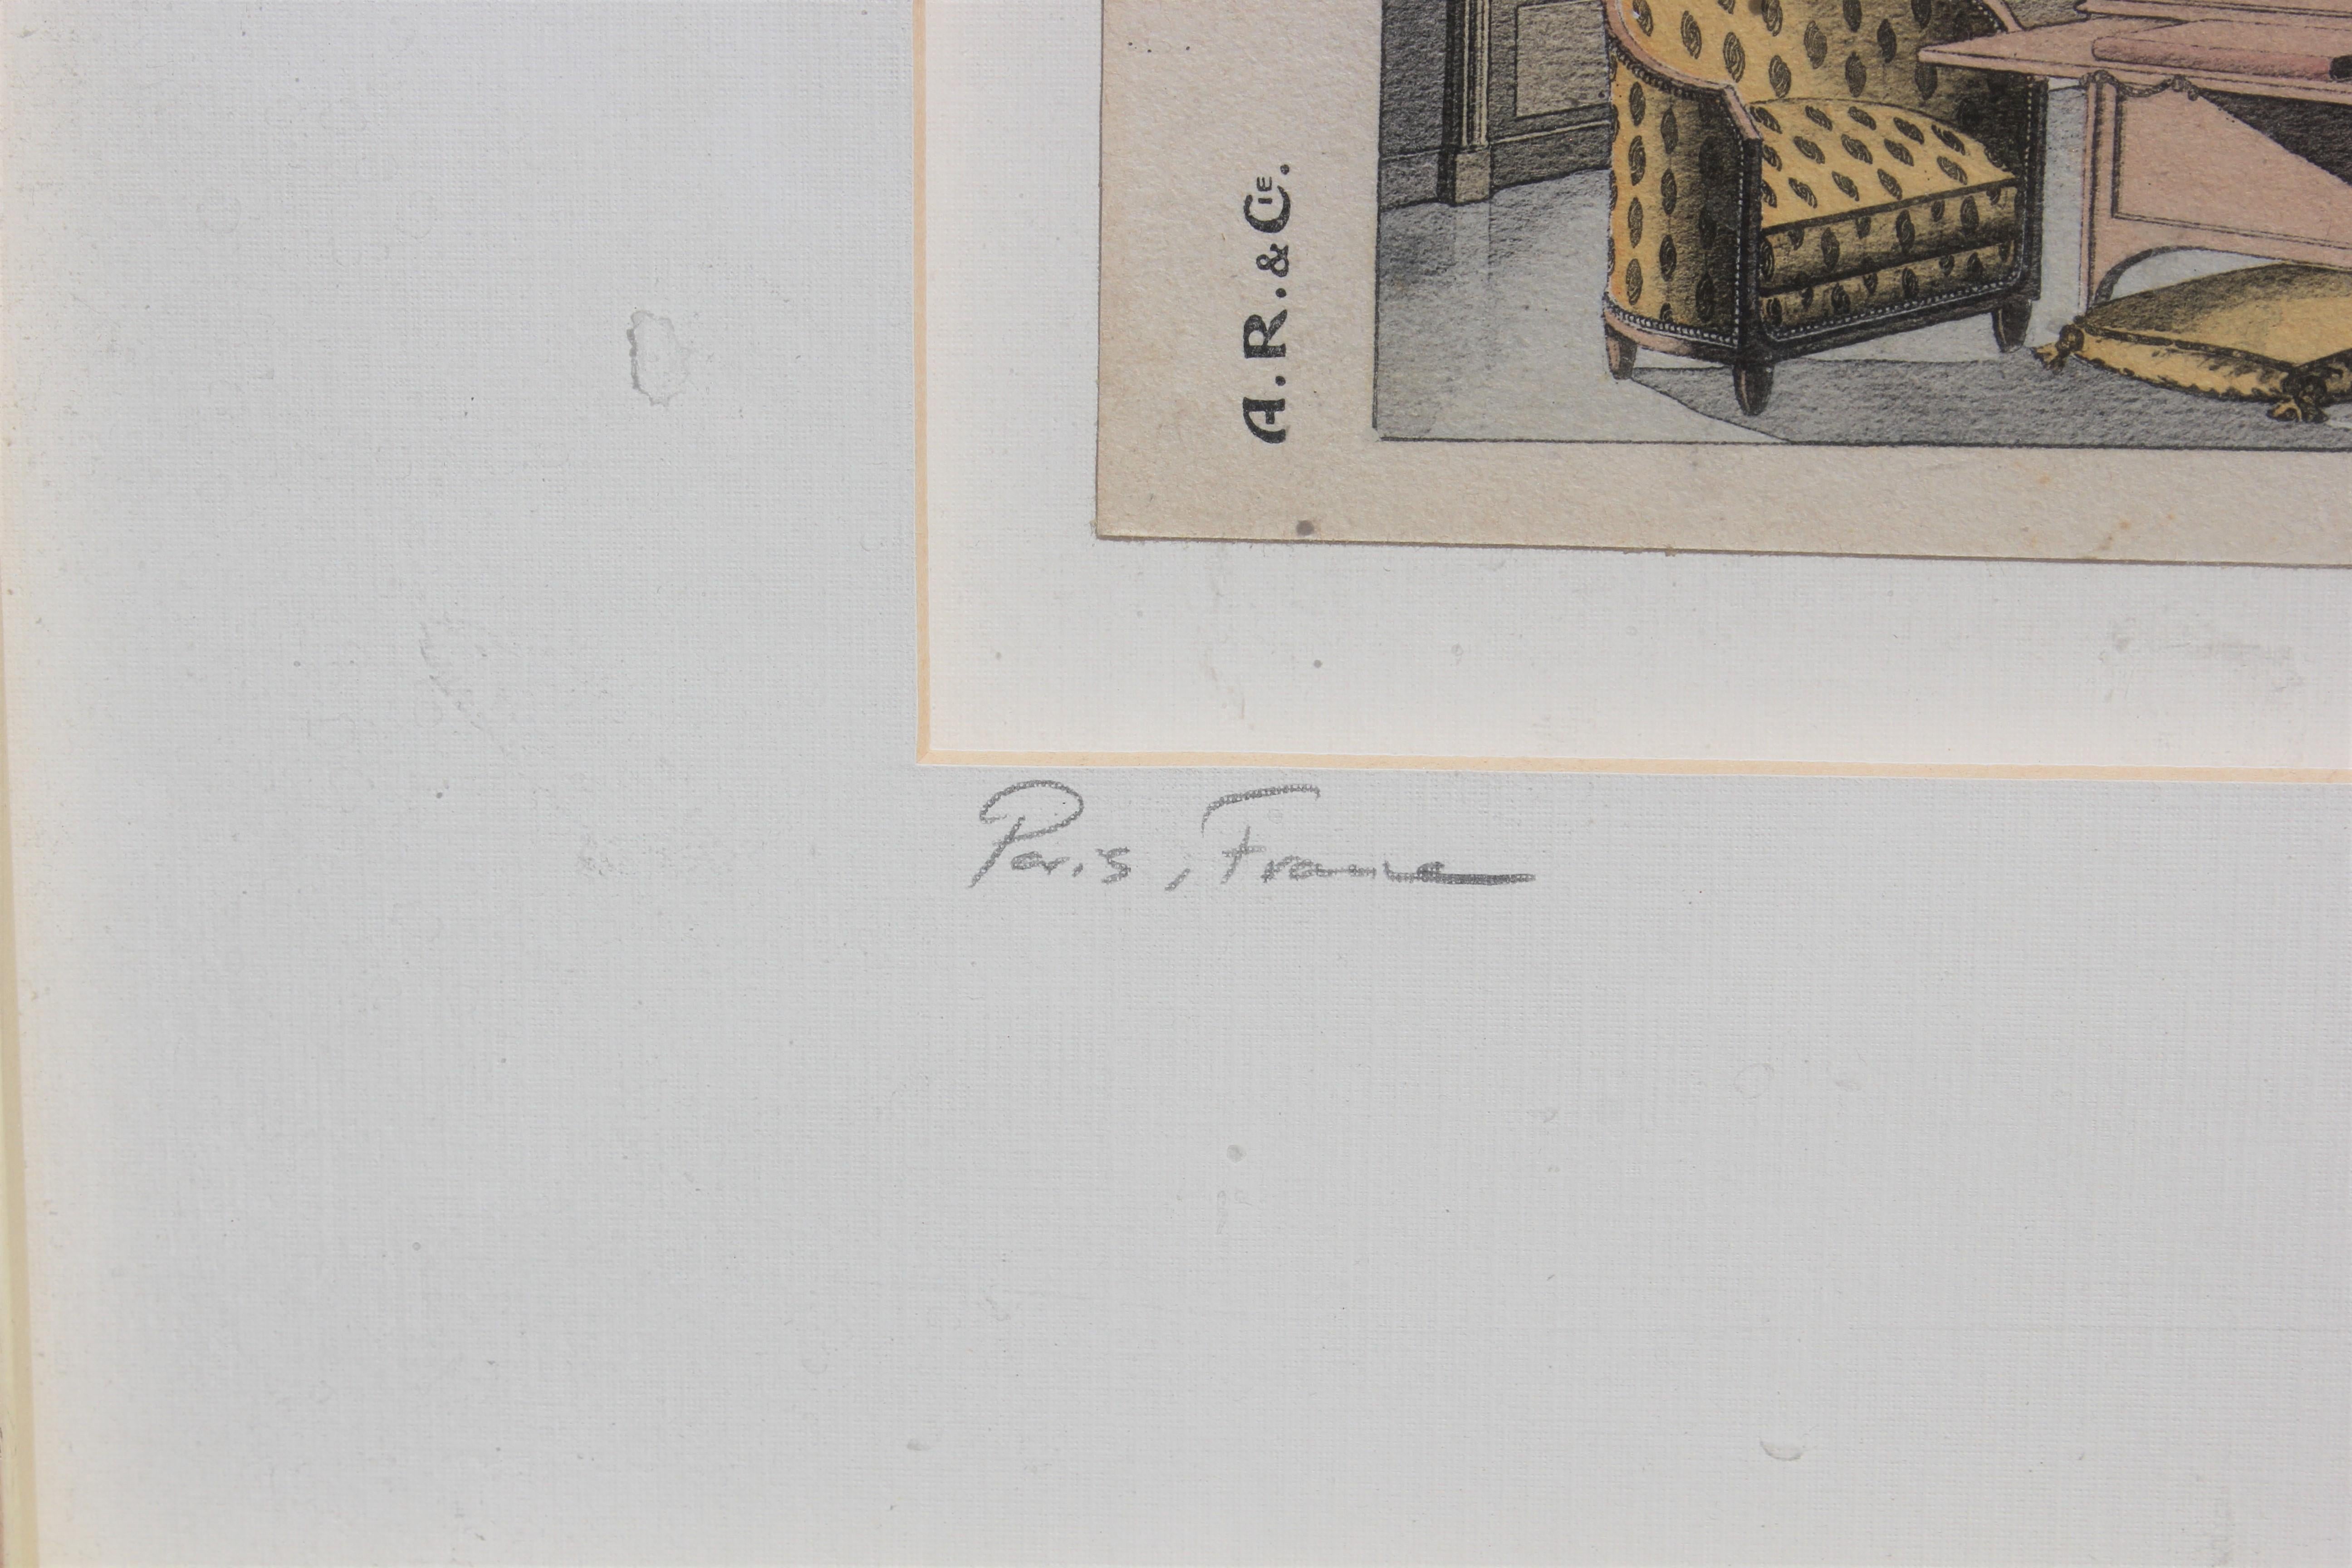 A. R. & Cie. Katalog aus den 1920er Jahren. Modernes Art-Deco-Möbel-Setup nummeriert Tafel 17. Unten links signiert Paris, Frankreich und unten rechts datiert.
Abmessungen ohne Rahmen: H 4,5 in. x B 8 in.